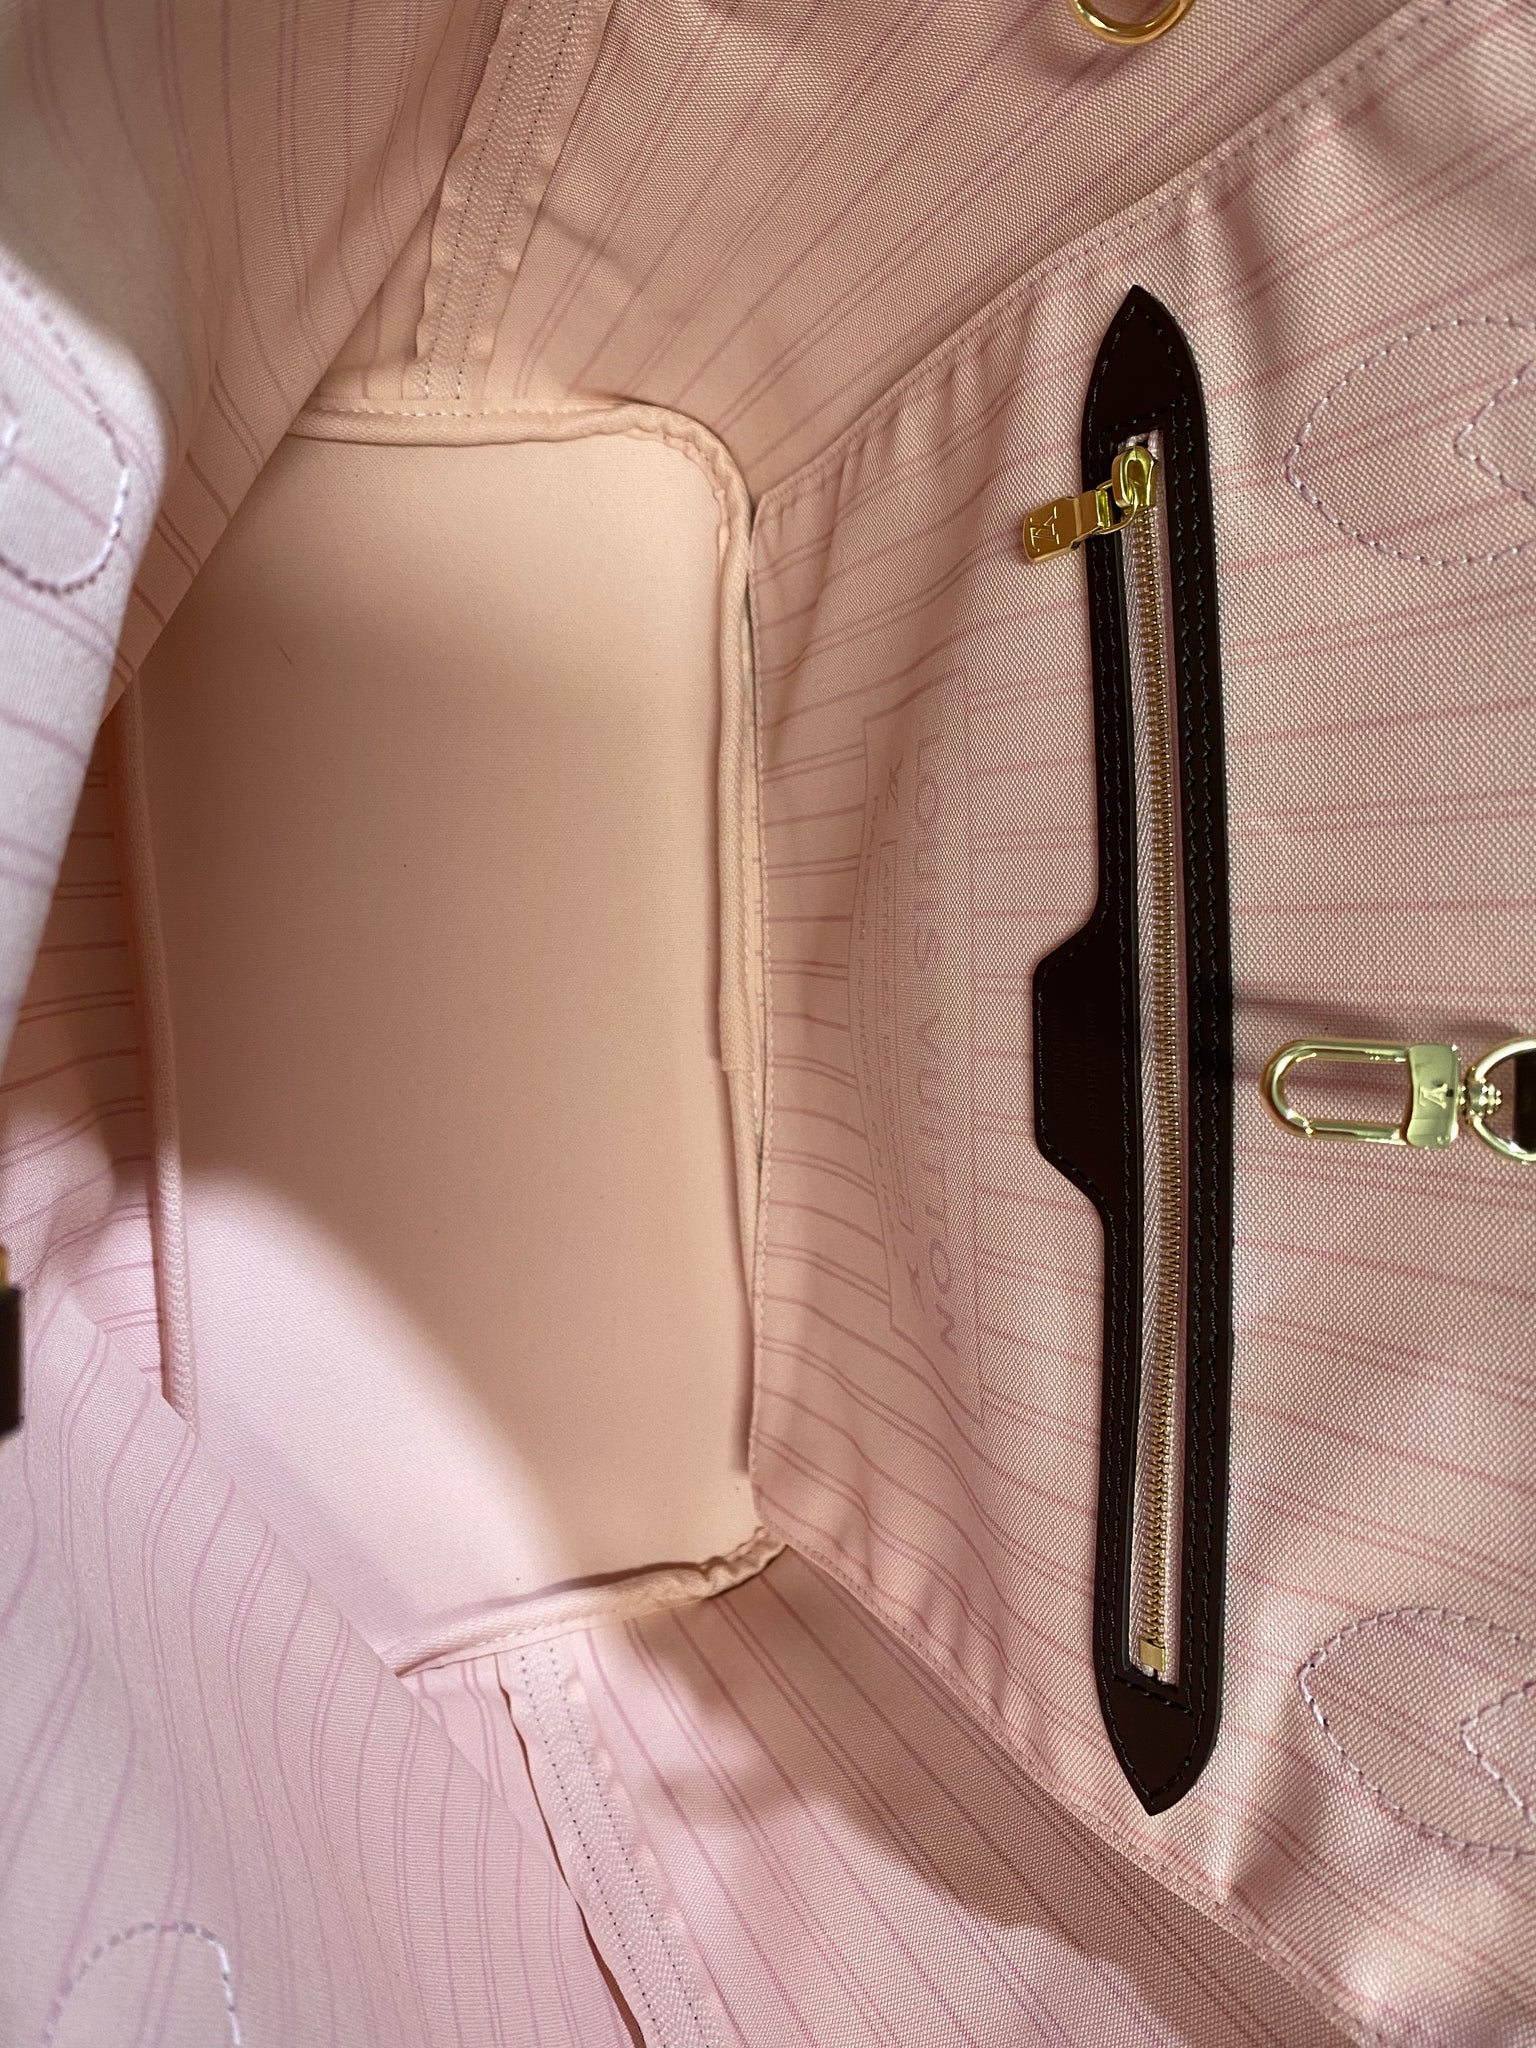 New Louis Vuitton Ebene Damier Pink/Rose Ballerine Interior